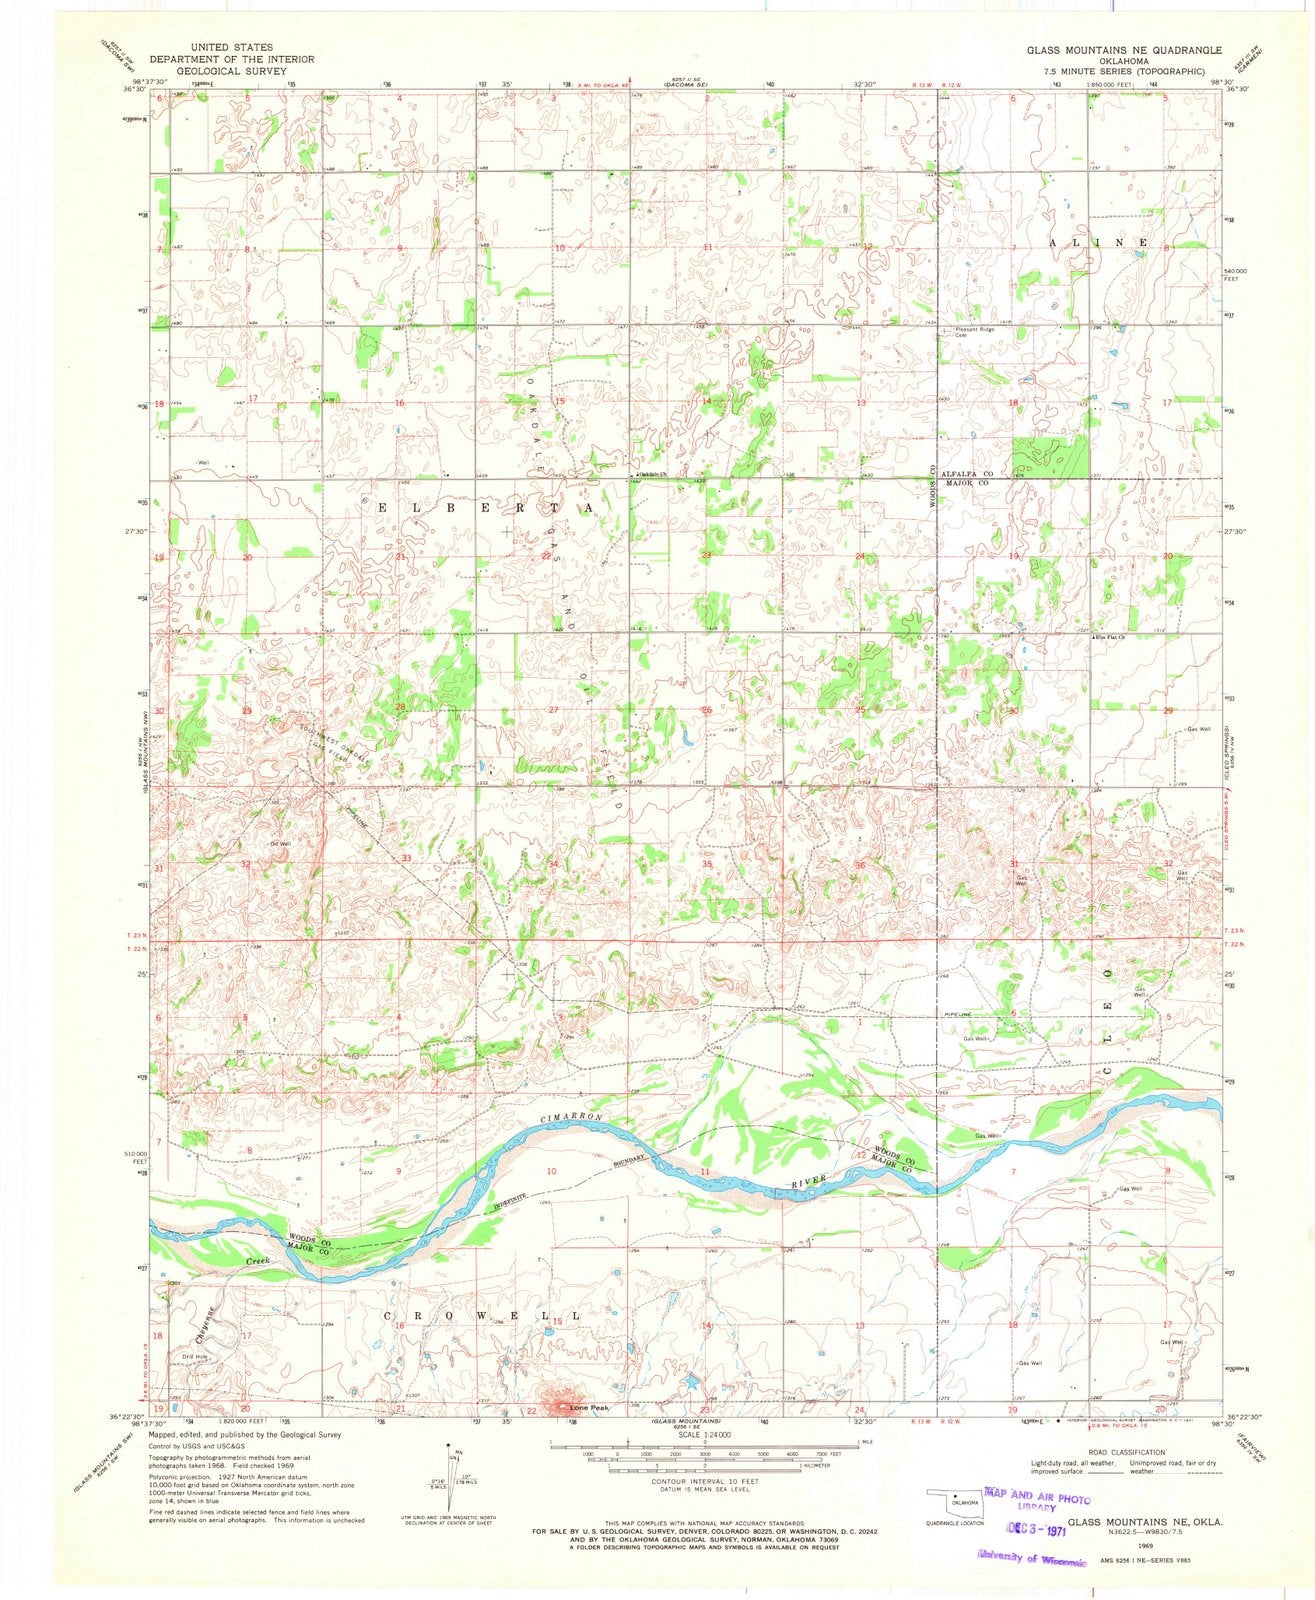 1969 Glass Mountains, OK - Oklahoma - USGS Topographic Map